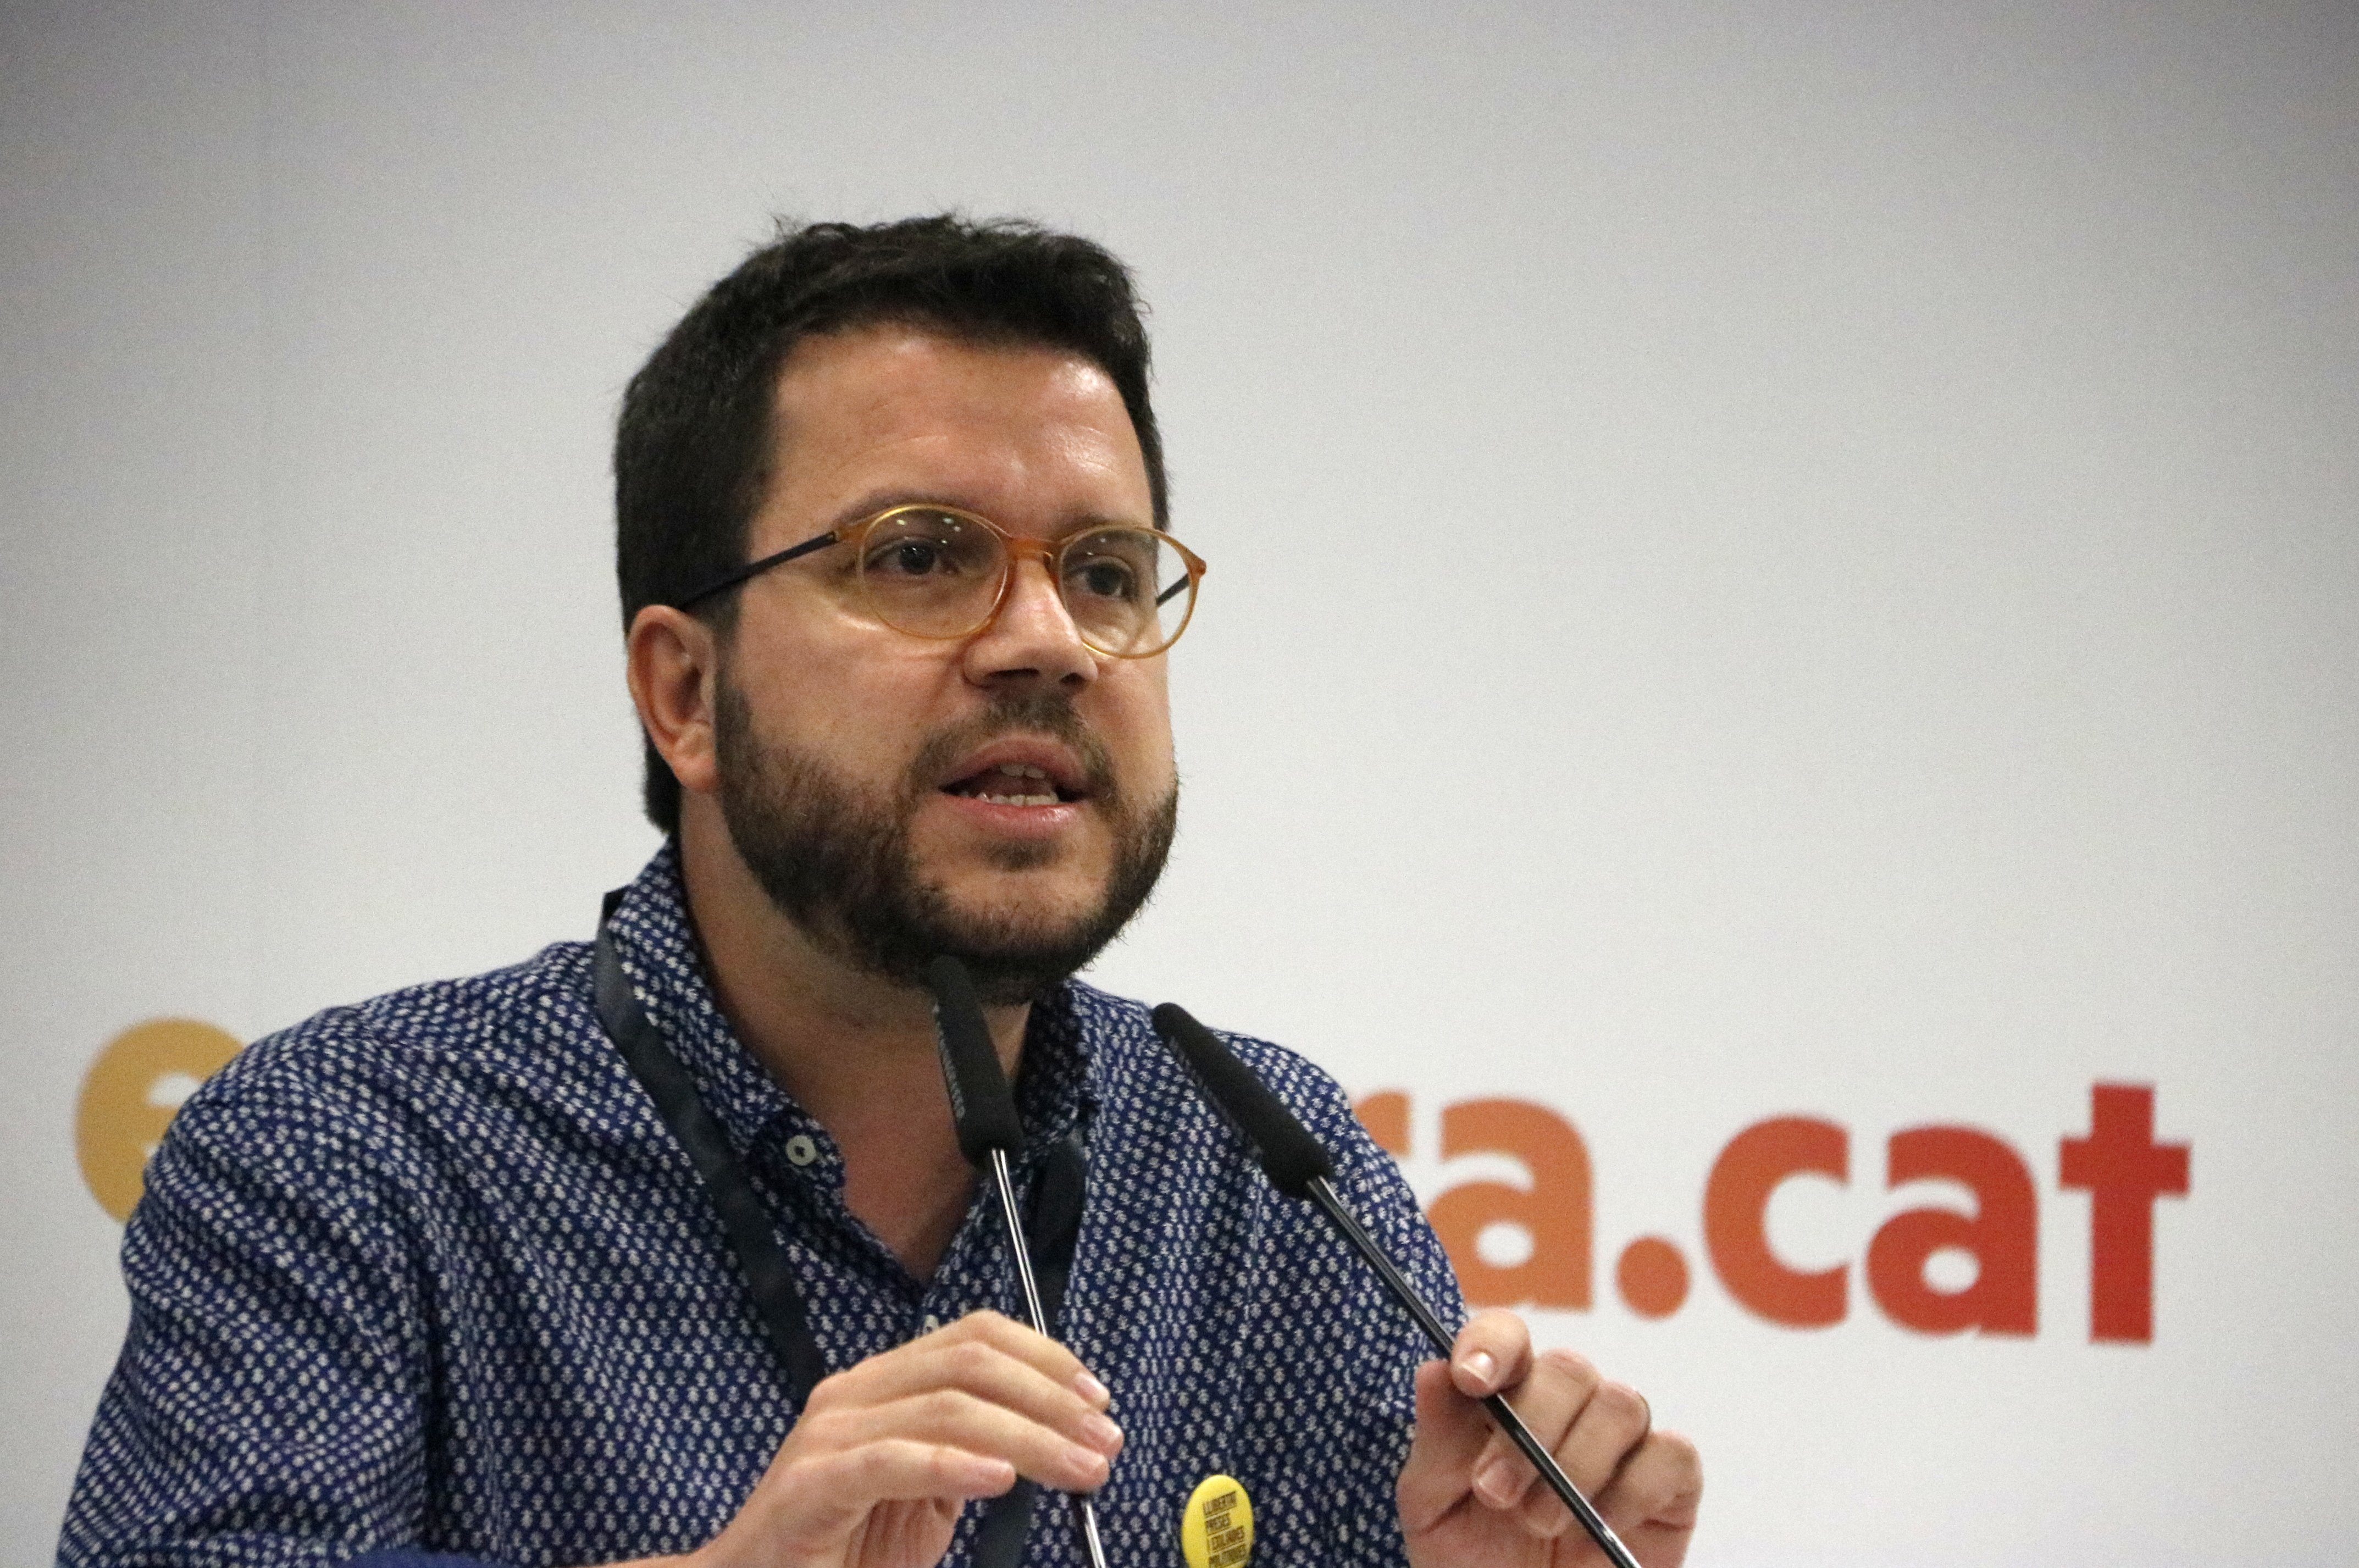 Aragonés: "Los independentistas seremos los primeros a rechazar la violencia venga de dónde venga"